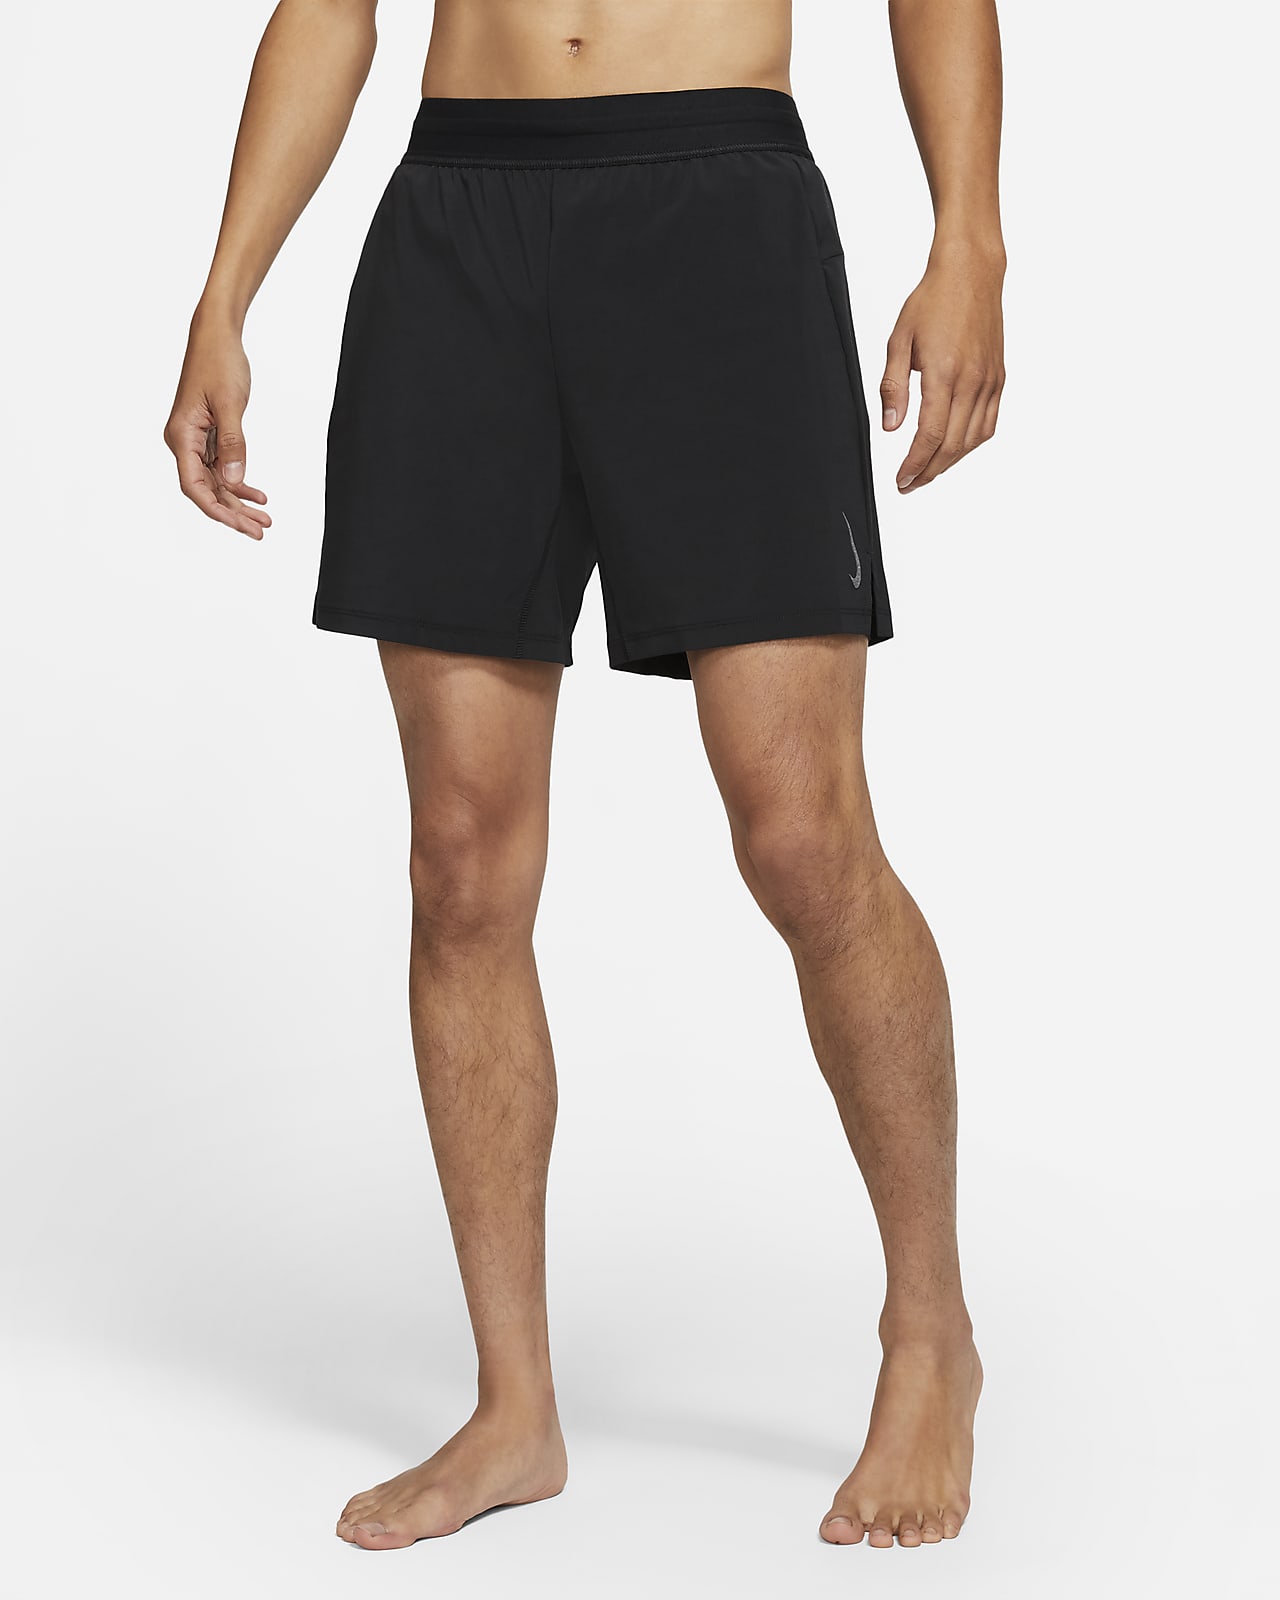 Nike Men's 2-in-1 Shorts